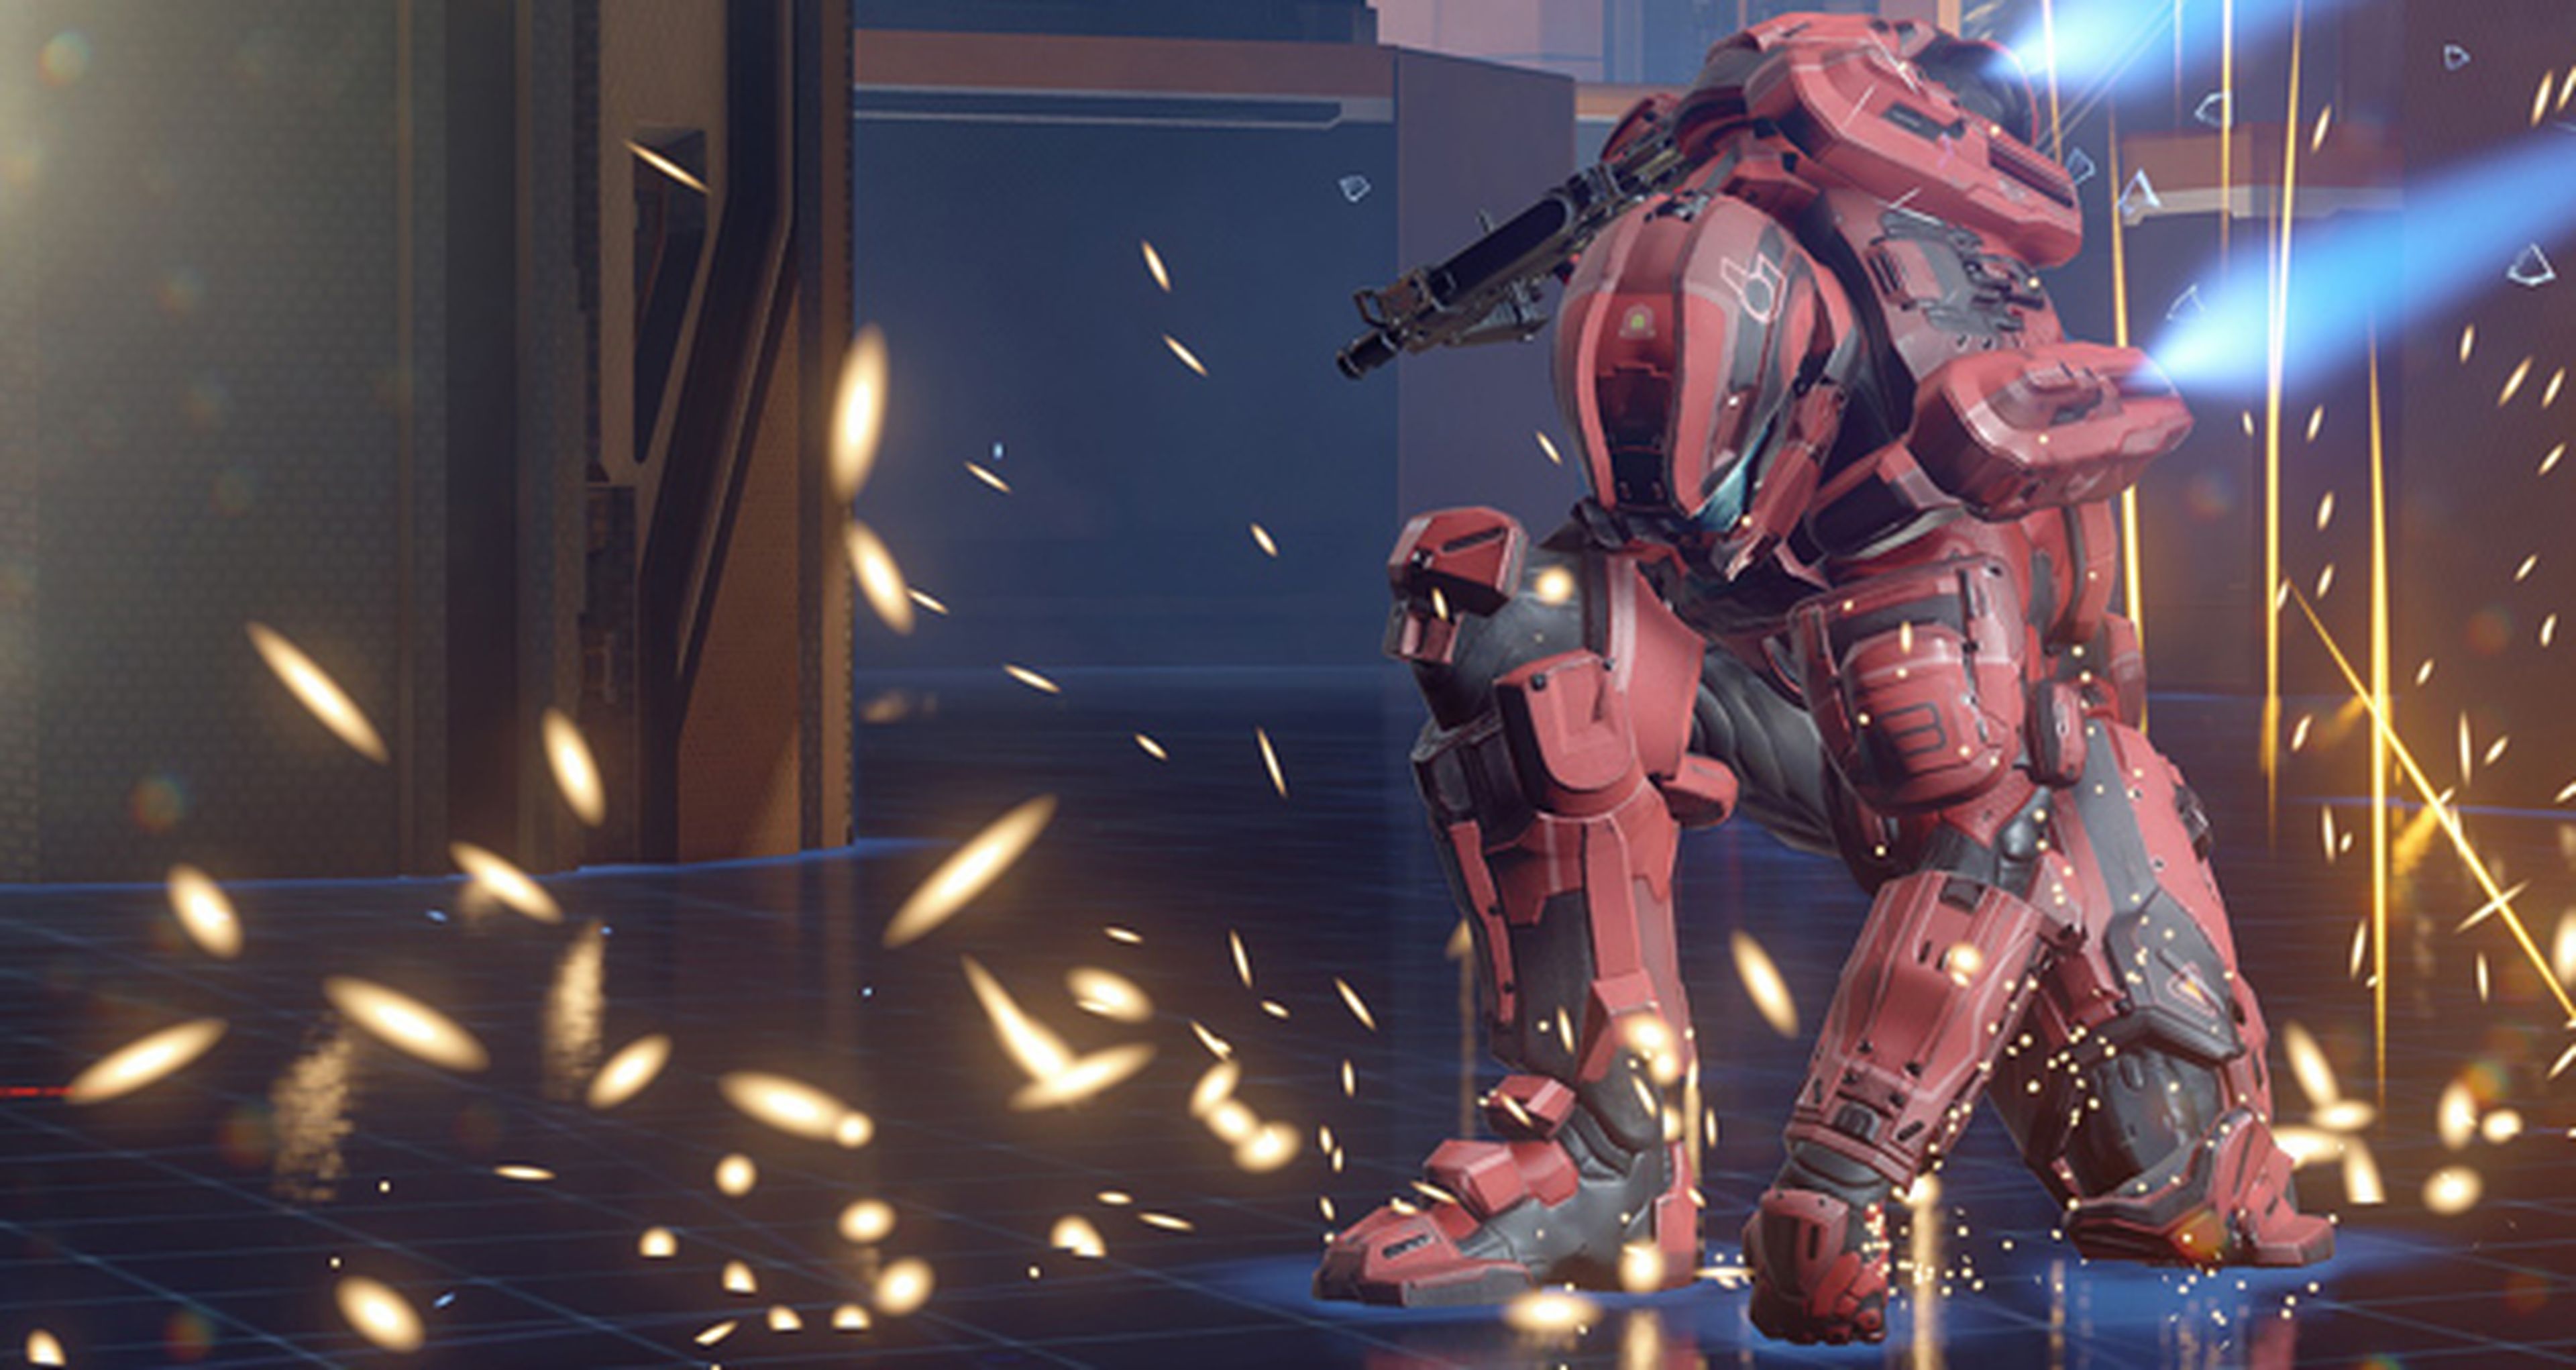 La beta de Halo 5 Guardians correrá a 720p y 60 fps